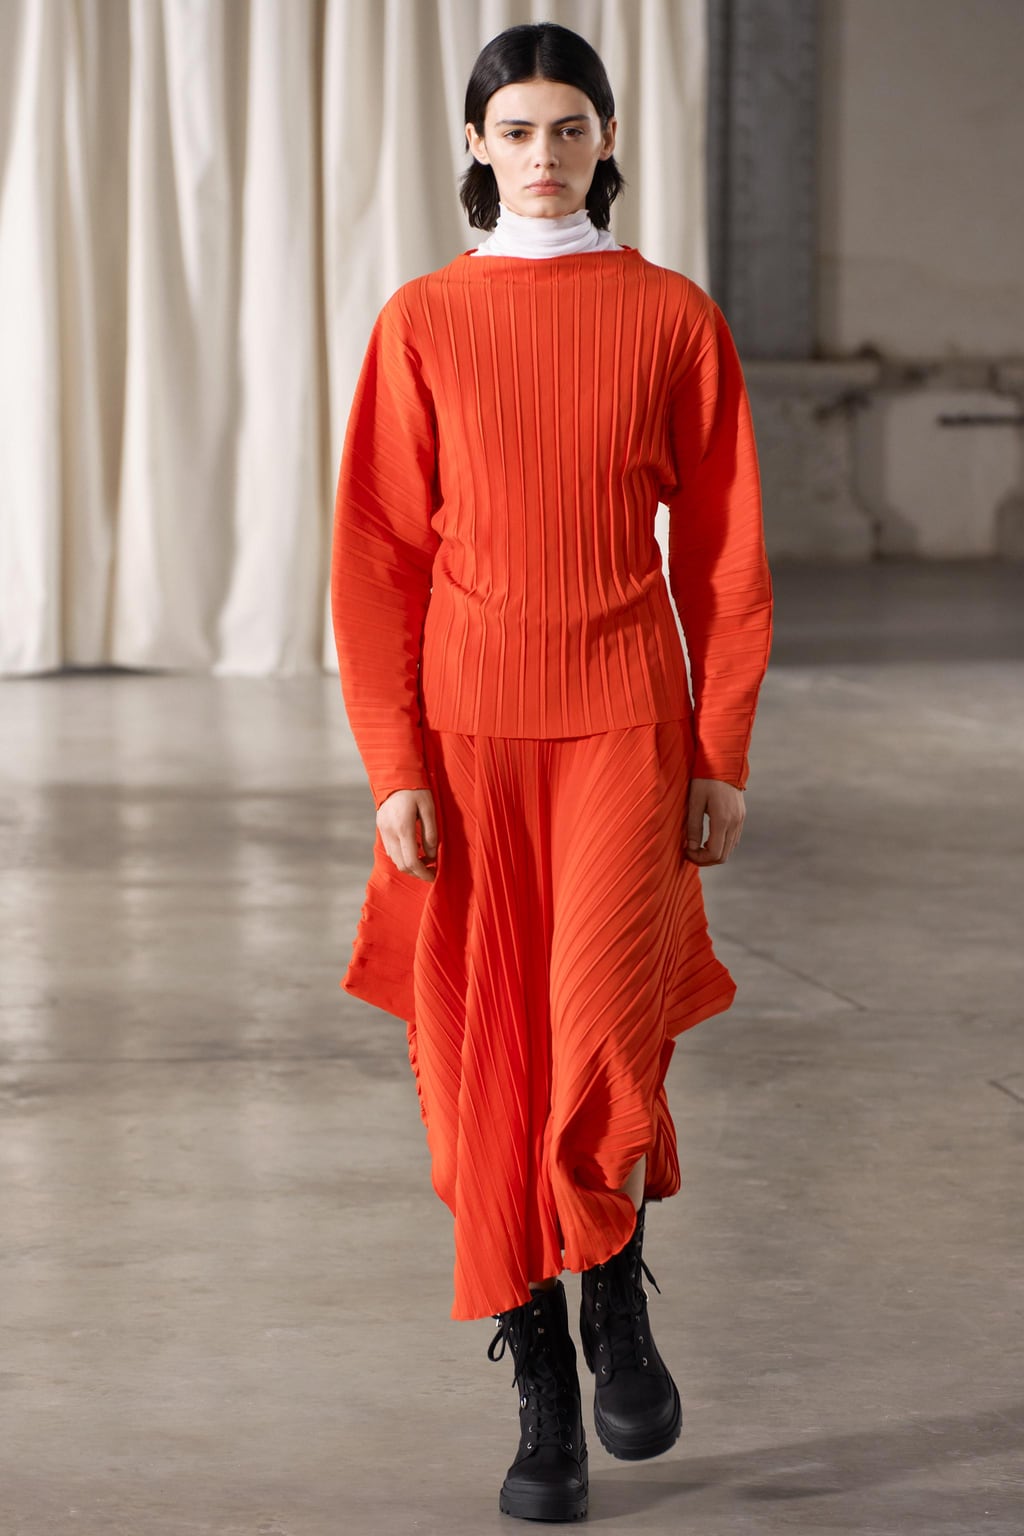 Асимметричная юбка со складками ZARA, красный апельсин юбка женская плиссированная с радужным принтом модная юбка до середины икры с завышенной талией свободная вечерняя с эластичным поясом н